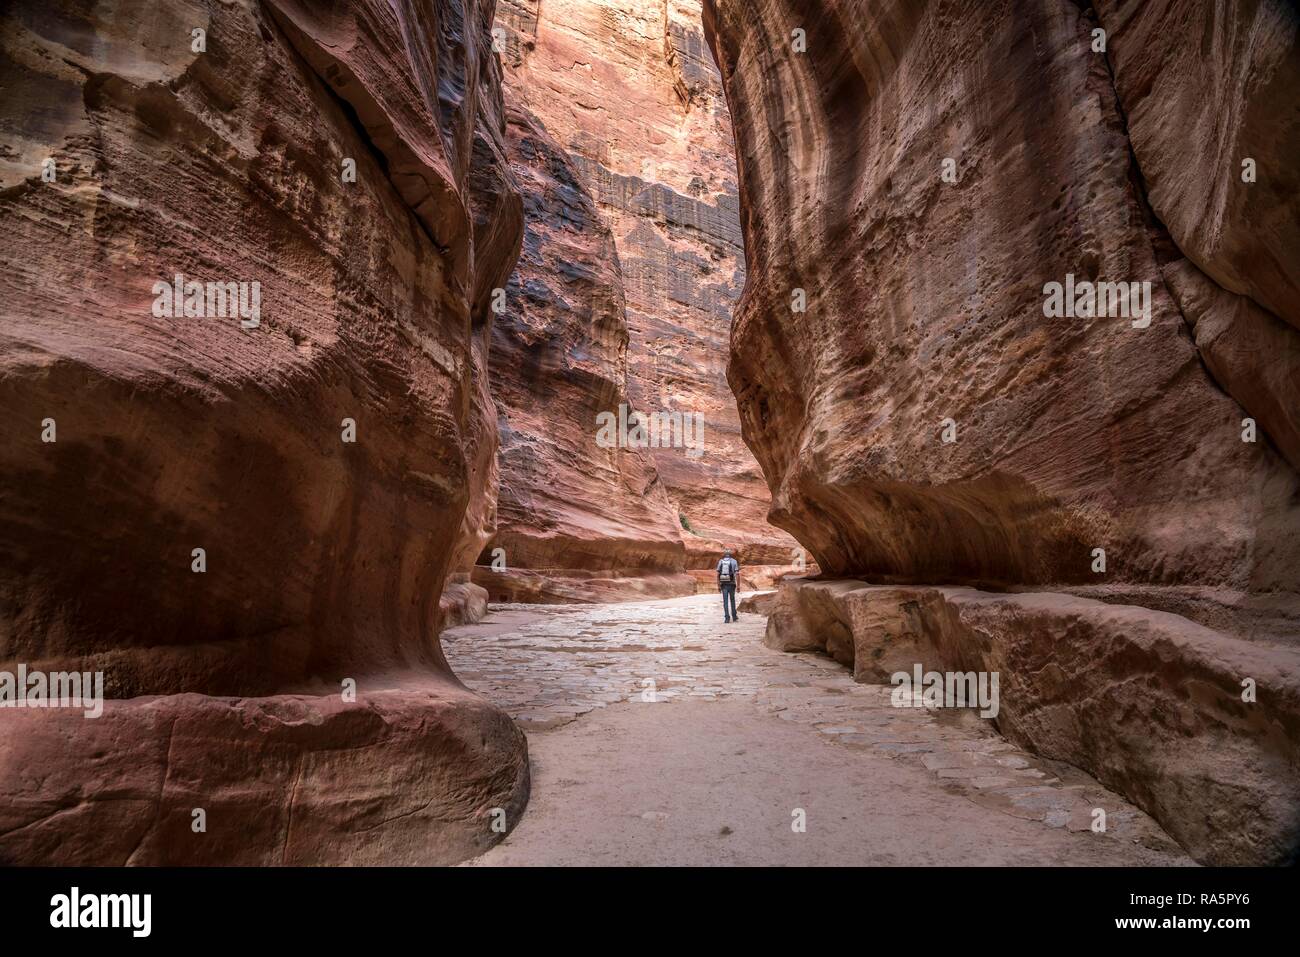 El estrecho cañón Siq lleva a Petra, Jordania Foto de stock